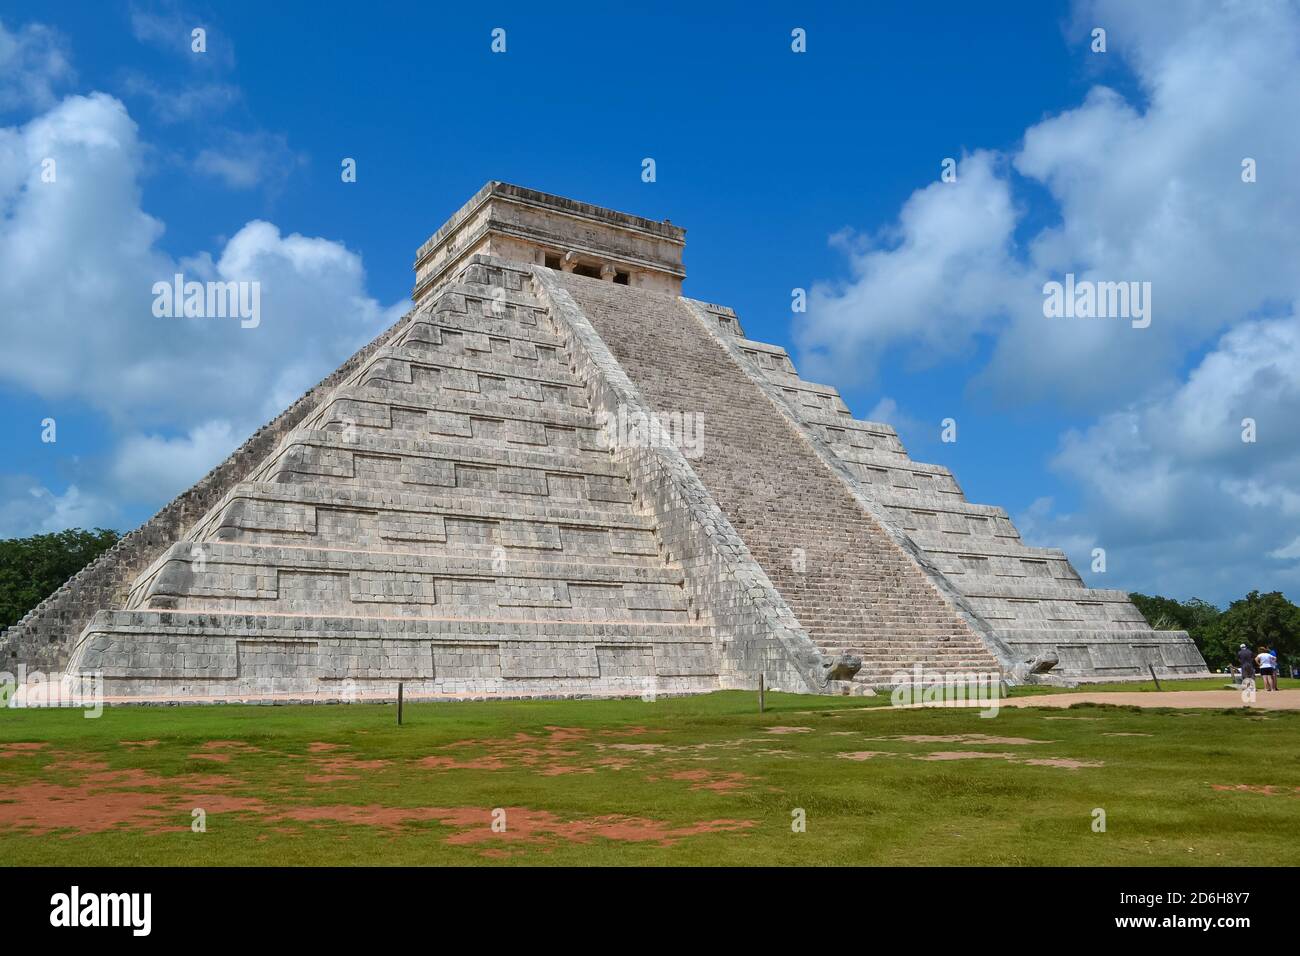 Pyramides mayas et diverses sculptures en pierre au site archéologique de Chichen Itza, l'un des endroits où la civilisation maya a été la plus développée. Banque D'Images